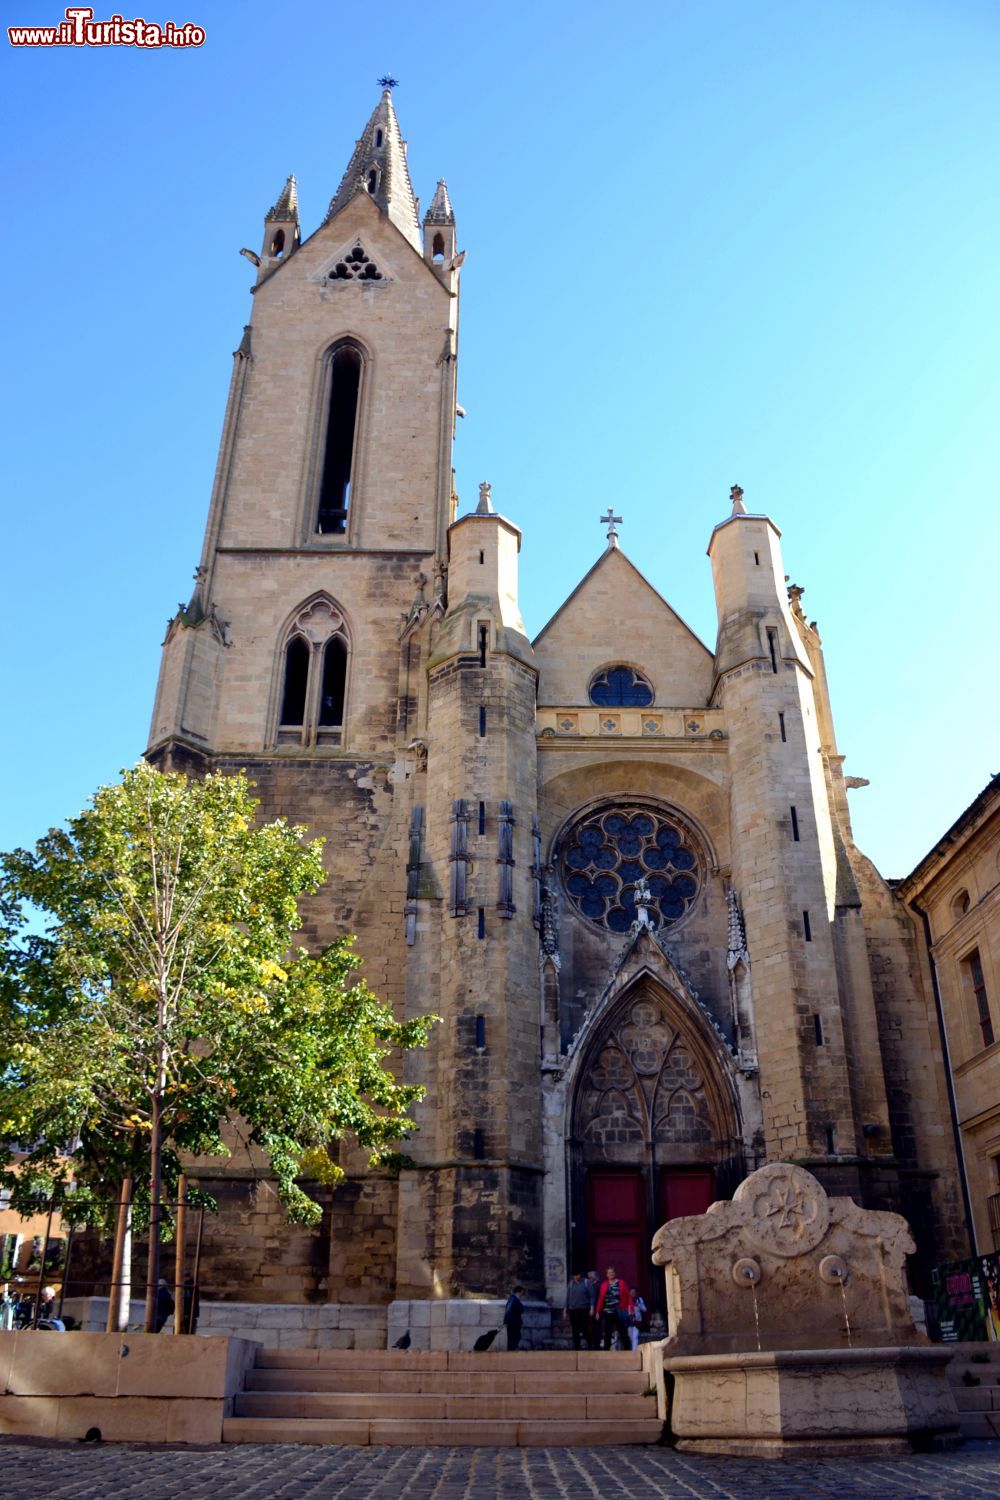 Immagine La chiesa di Saint-Jean de Malte, nel centro storico di Aix-en-Provence (Francia).